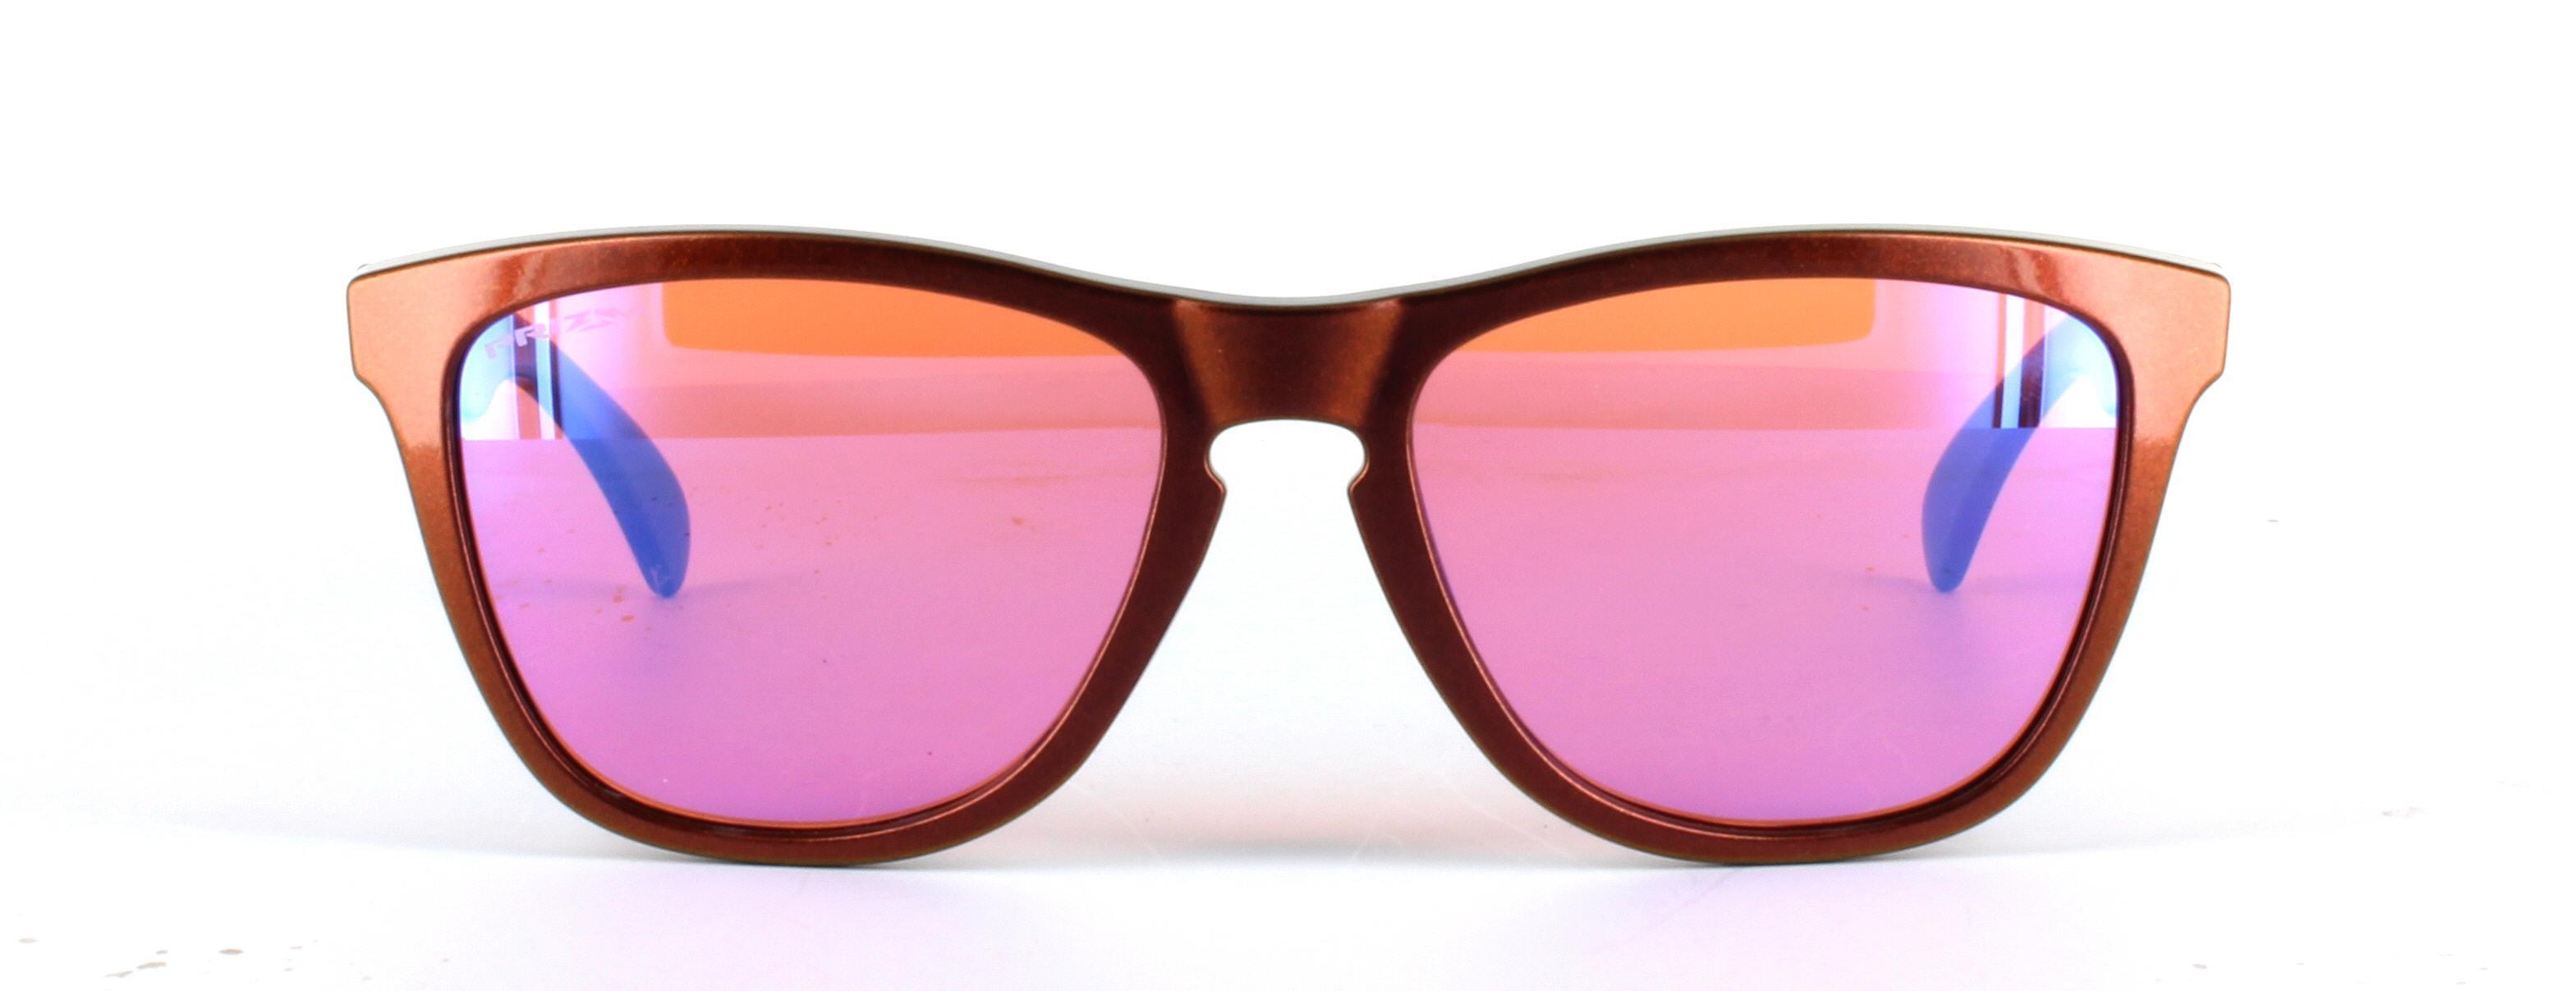 Oakley (O9013) Copper Full Rim Plastic Sunglasses - Image View 5